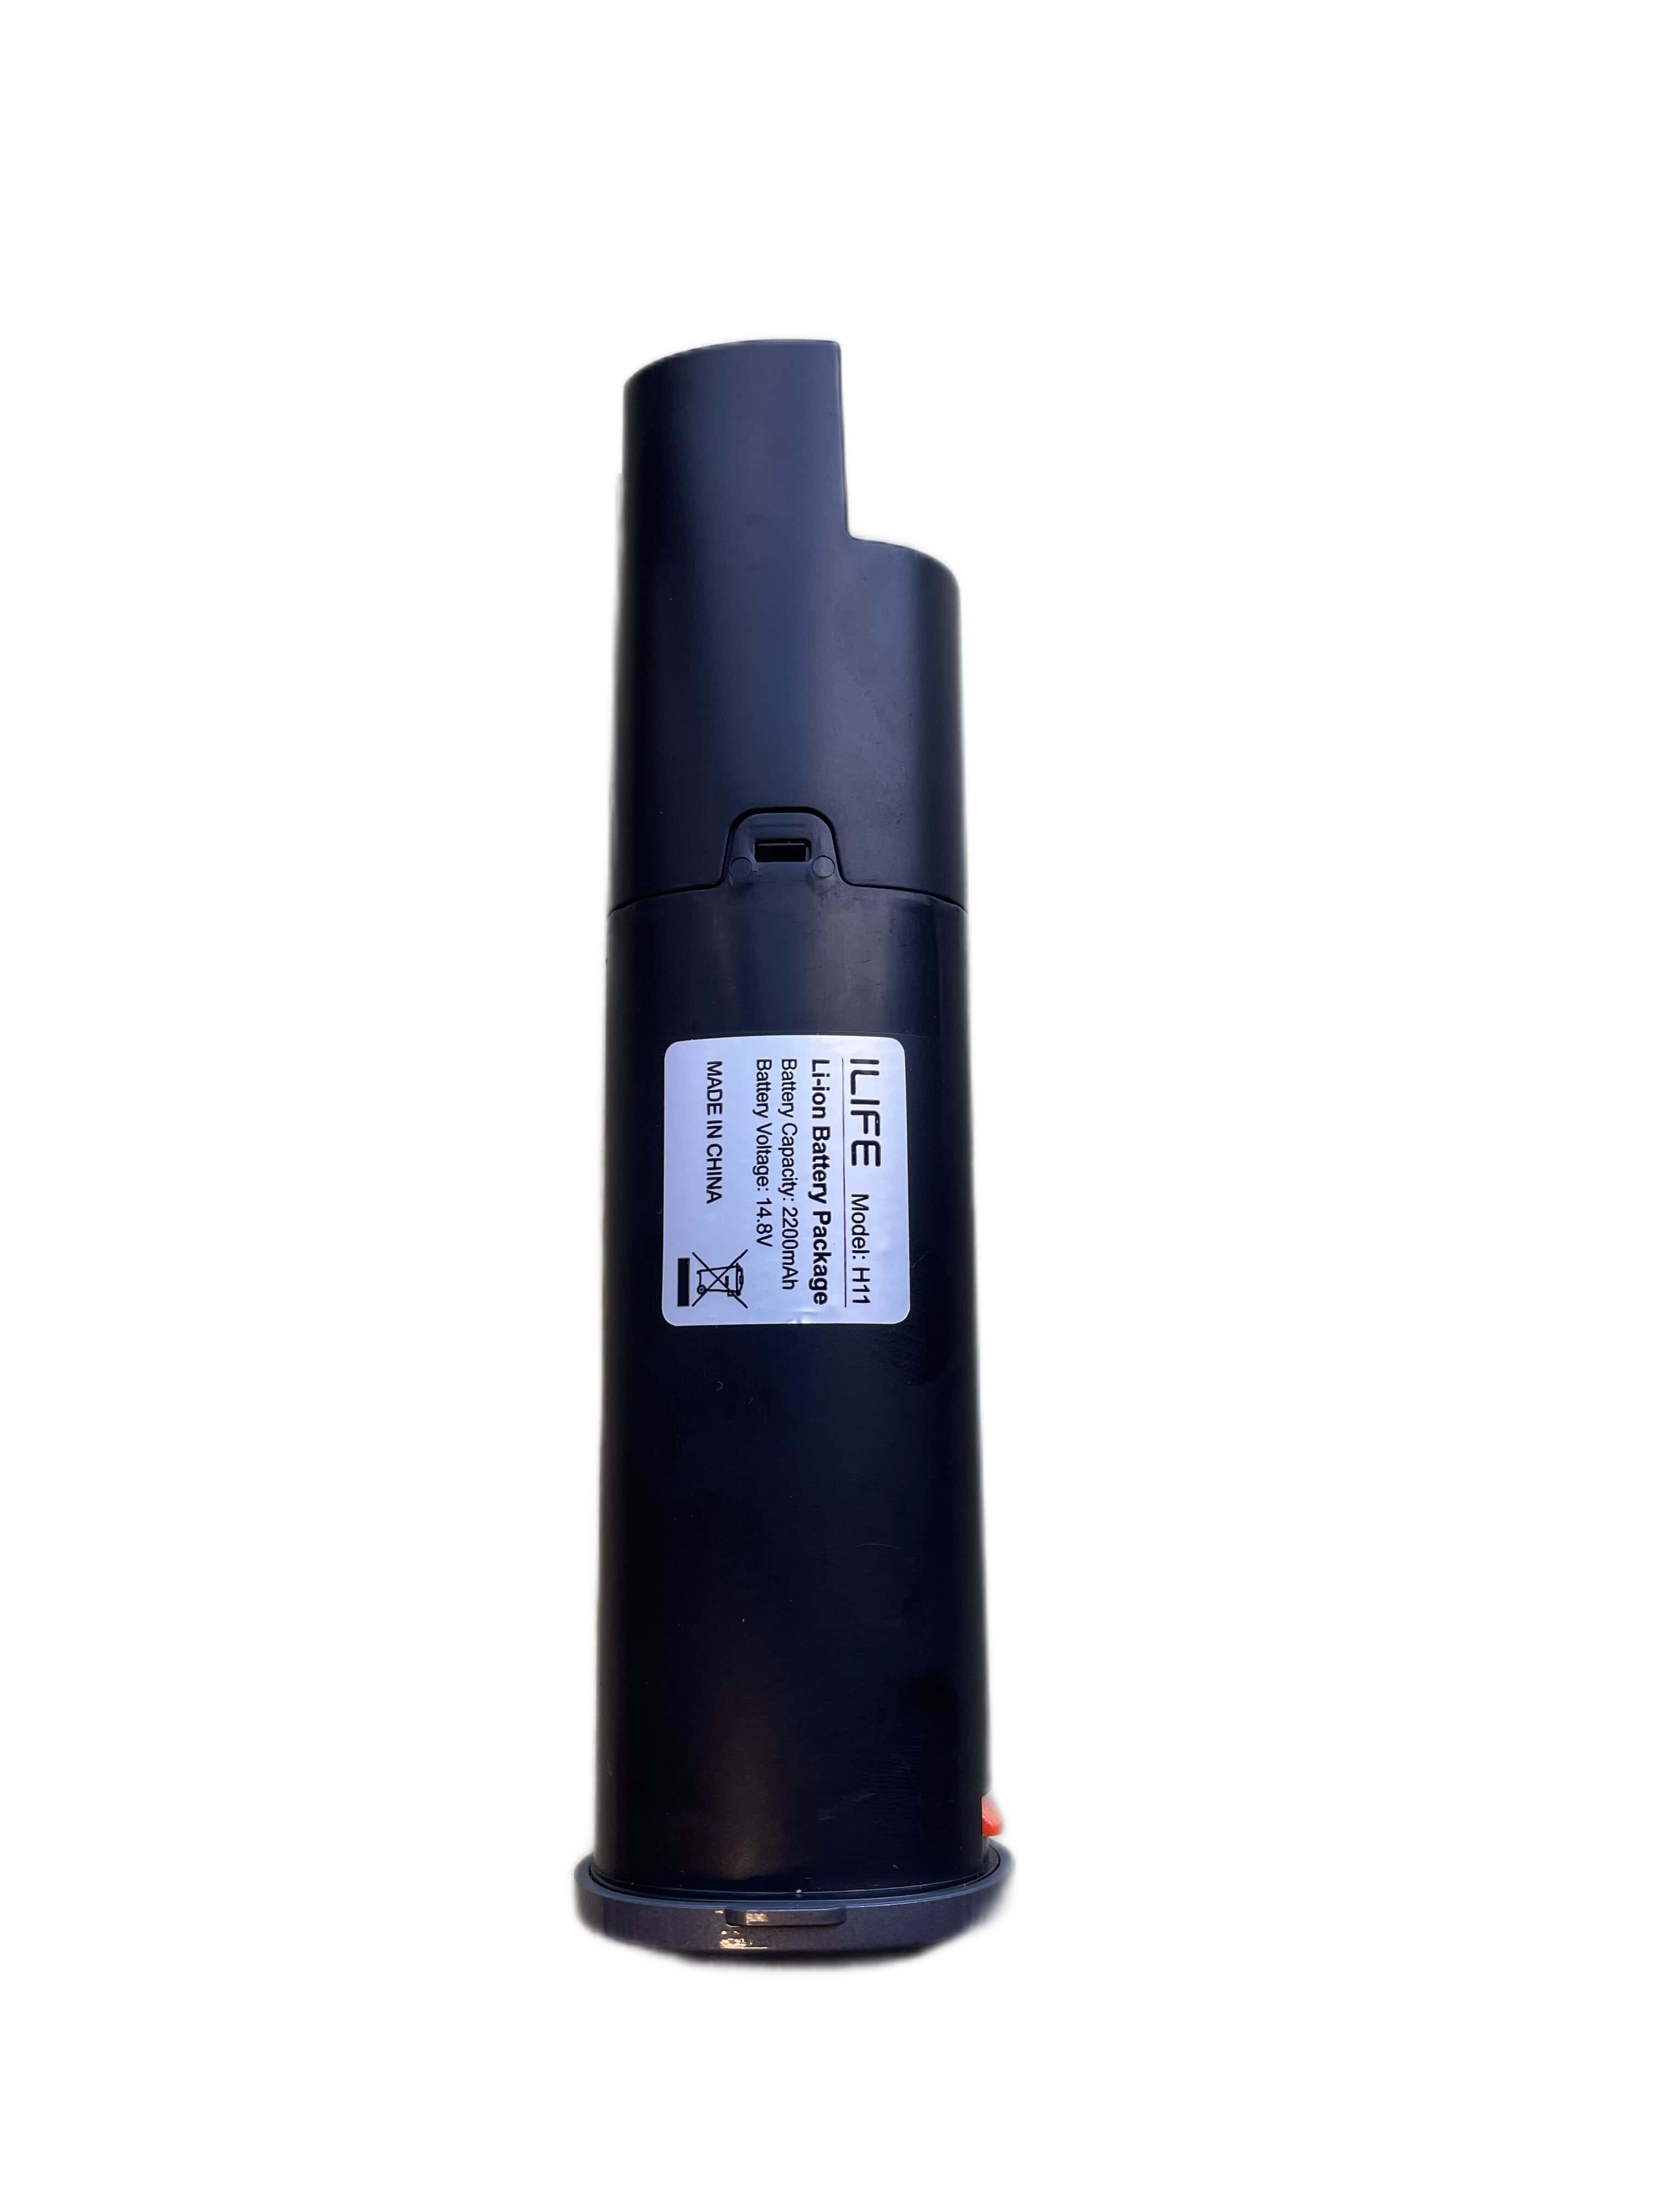 Аккумулятор для беспроводного пылесоса ILIFE H11 412 2200 мАч